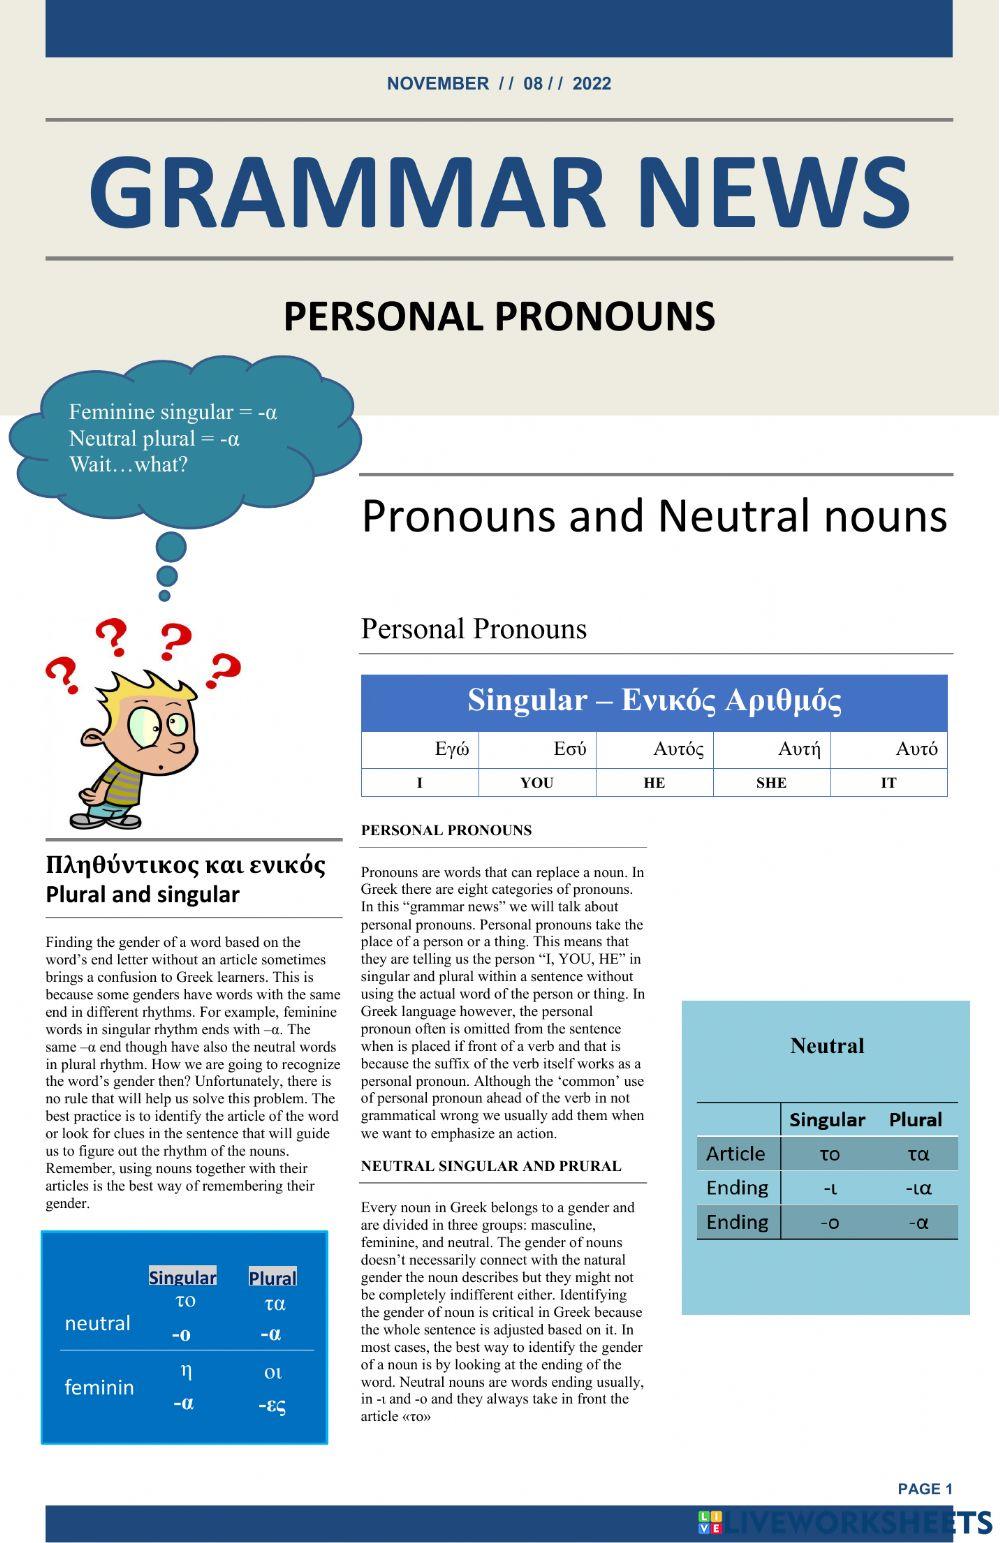 Pronous and neutral nouns